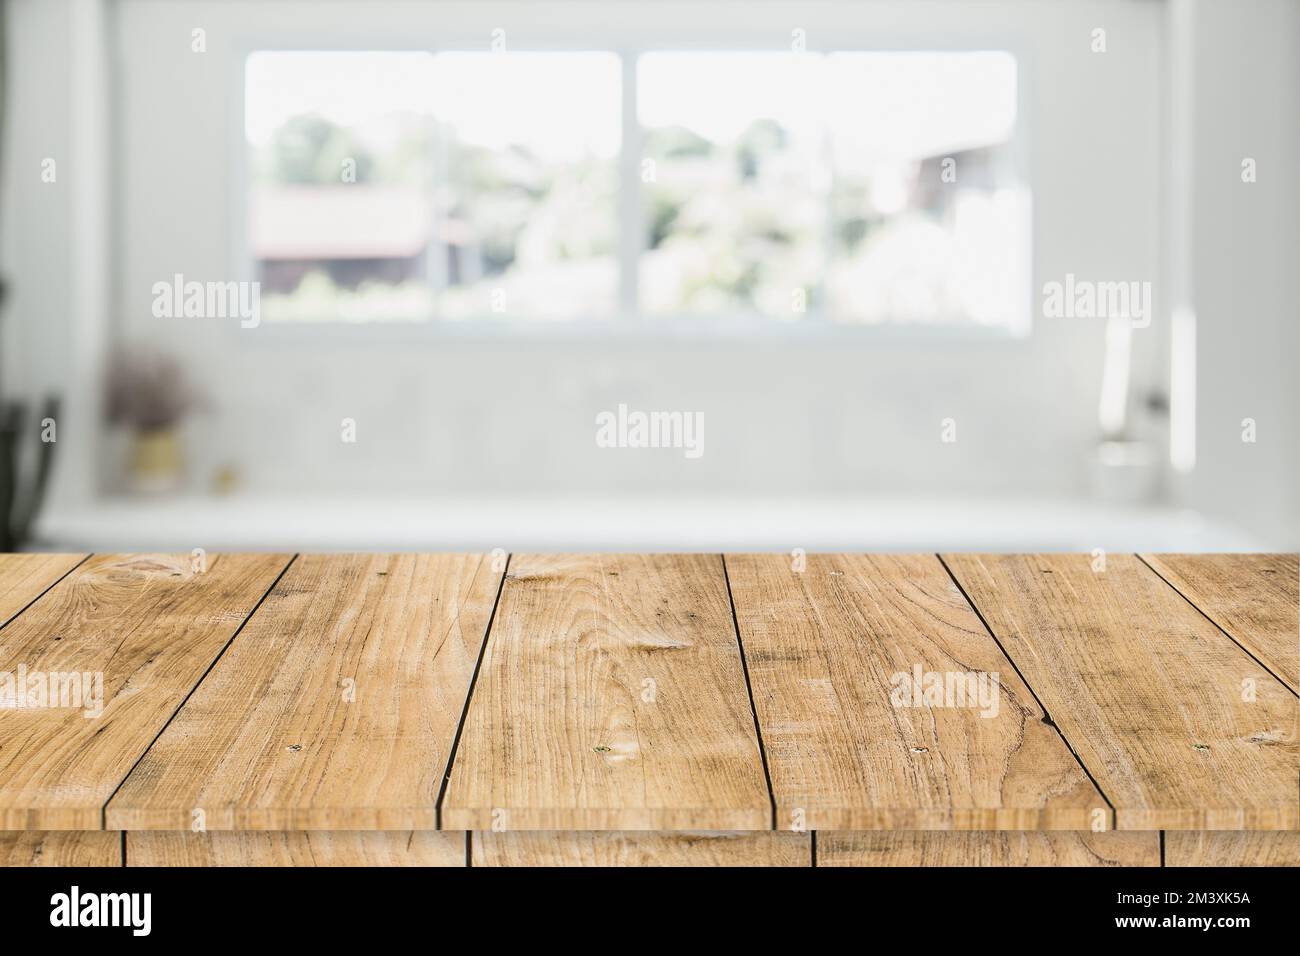 Verwischen Sie weiße Innenraumfenster mit Holztisch für die Montage von Werbespots Stockfoto